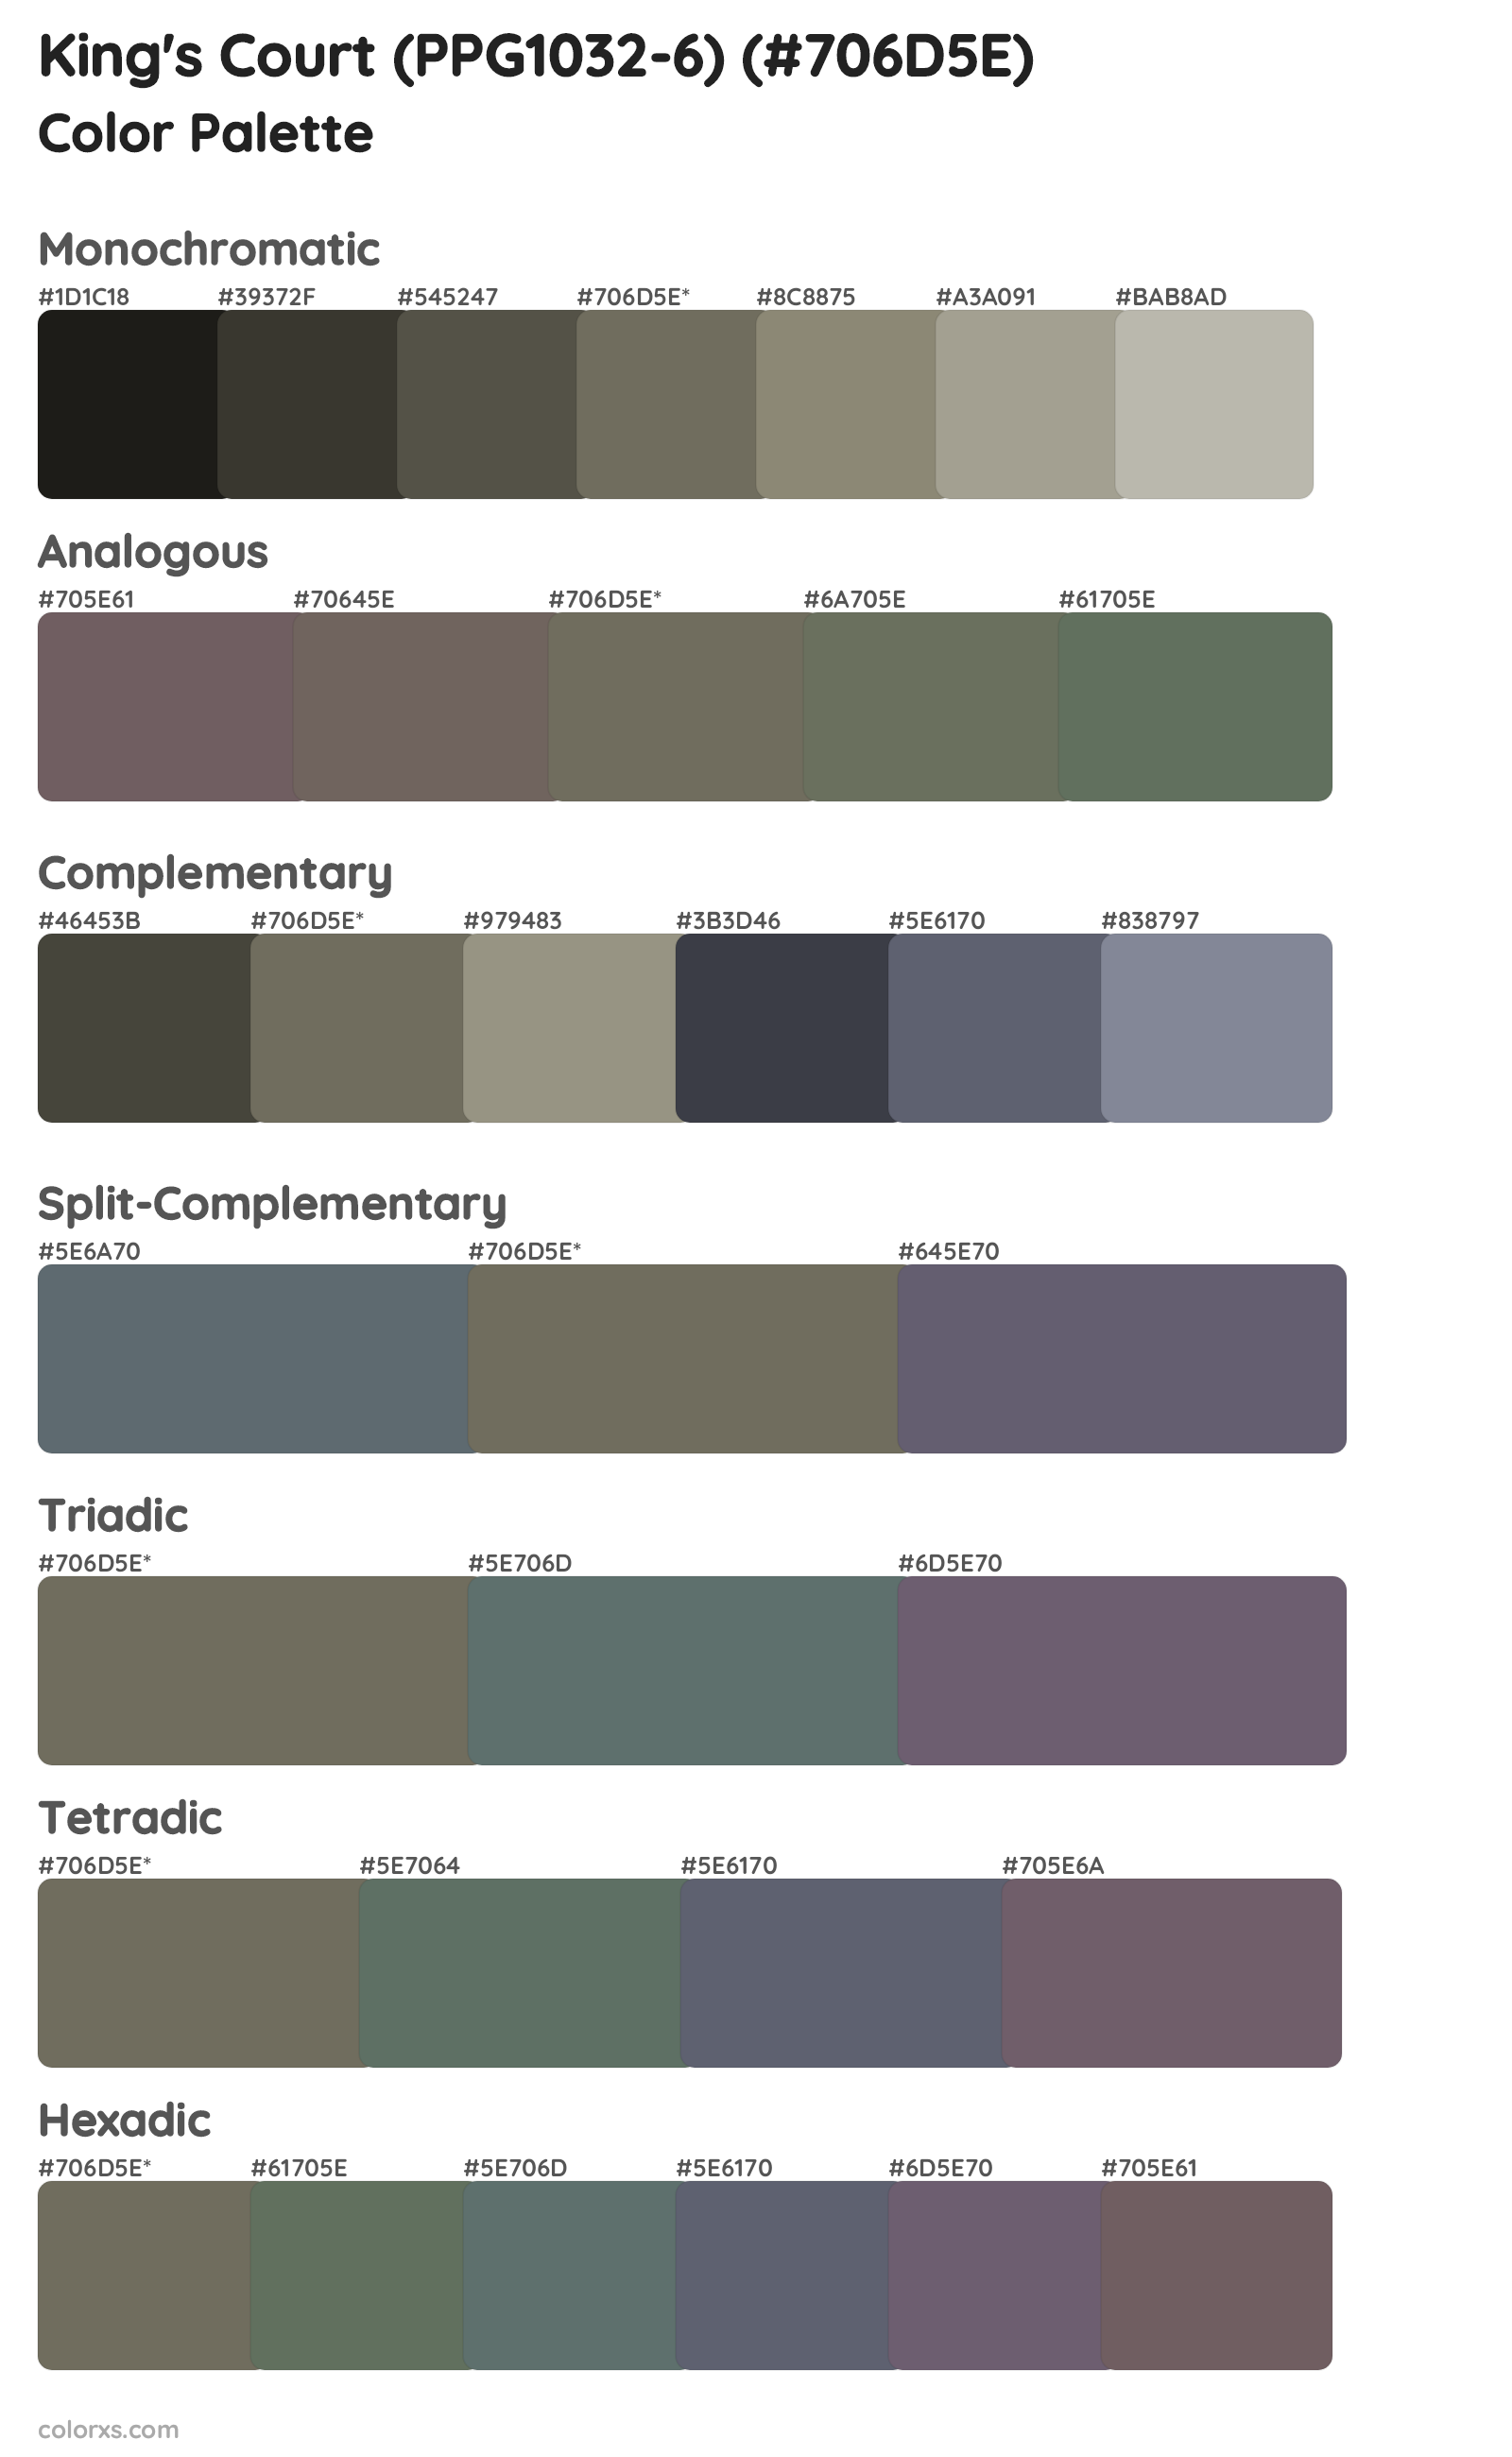 King's Court (PPG1032-6) Color Scheme Palettes